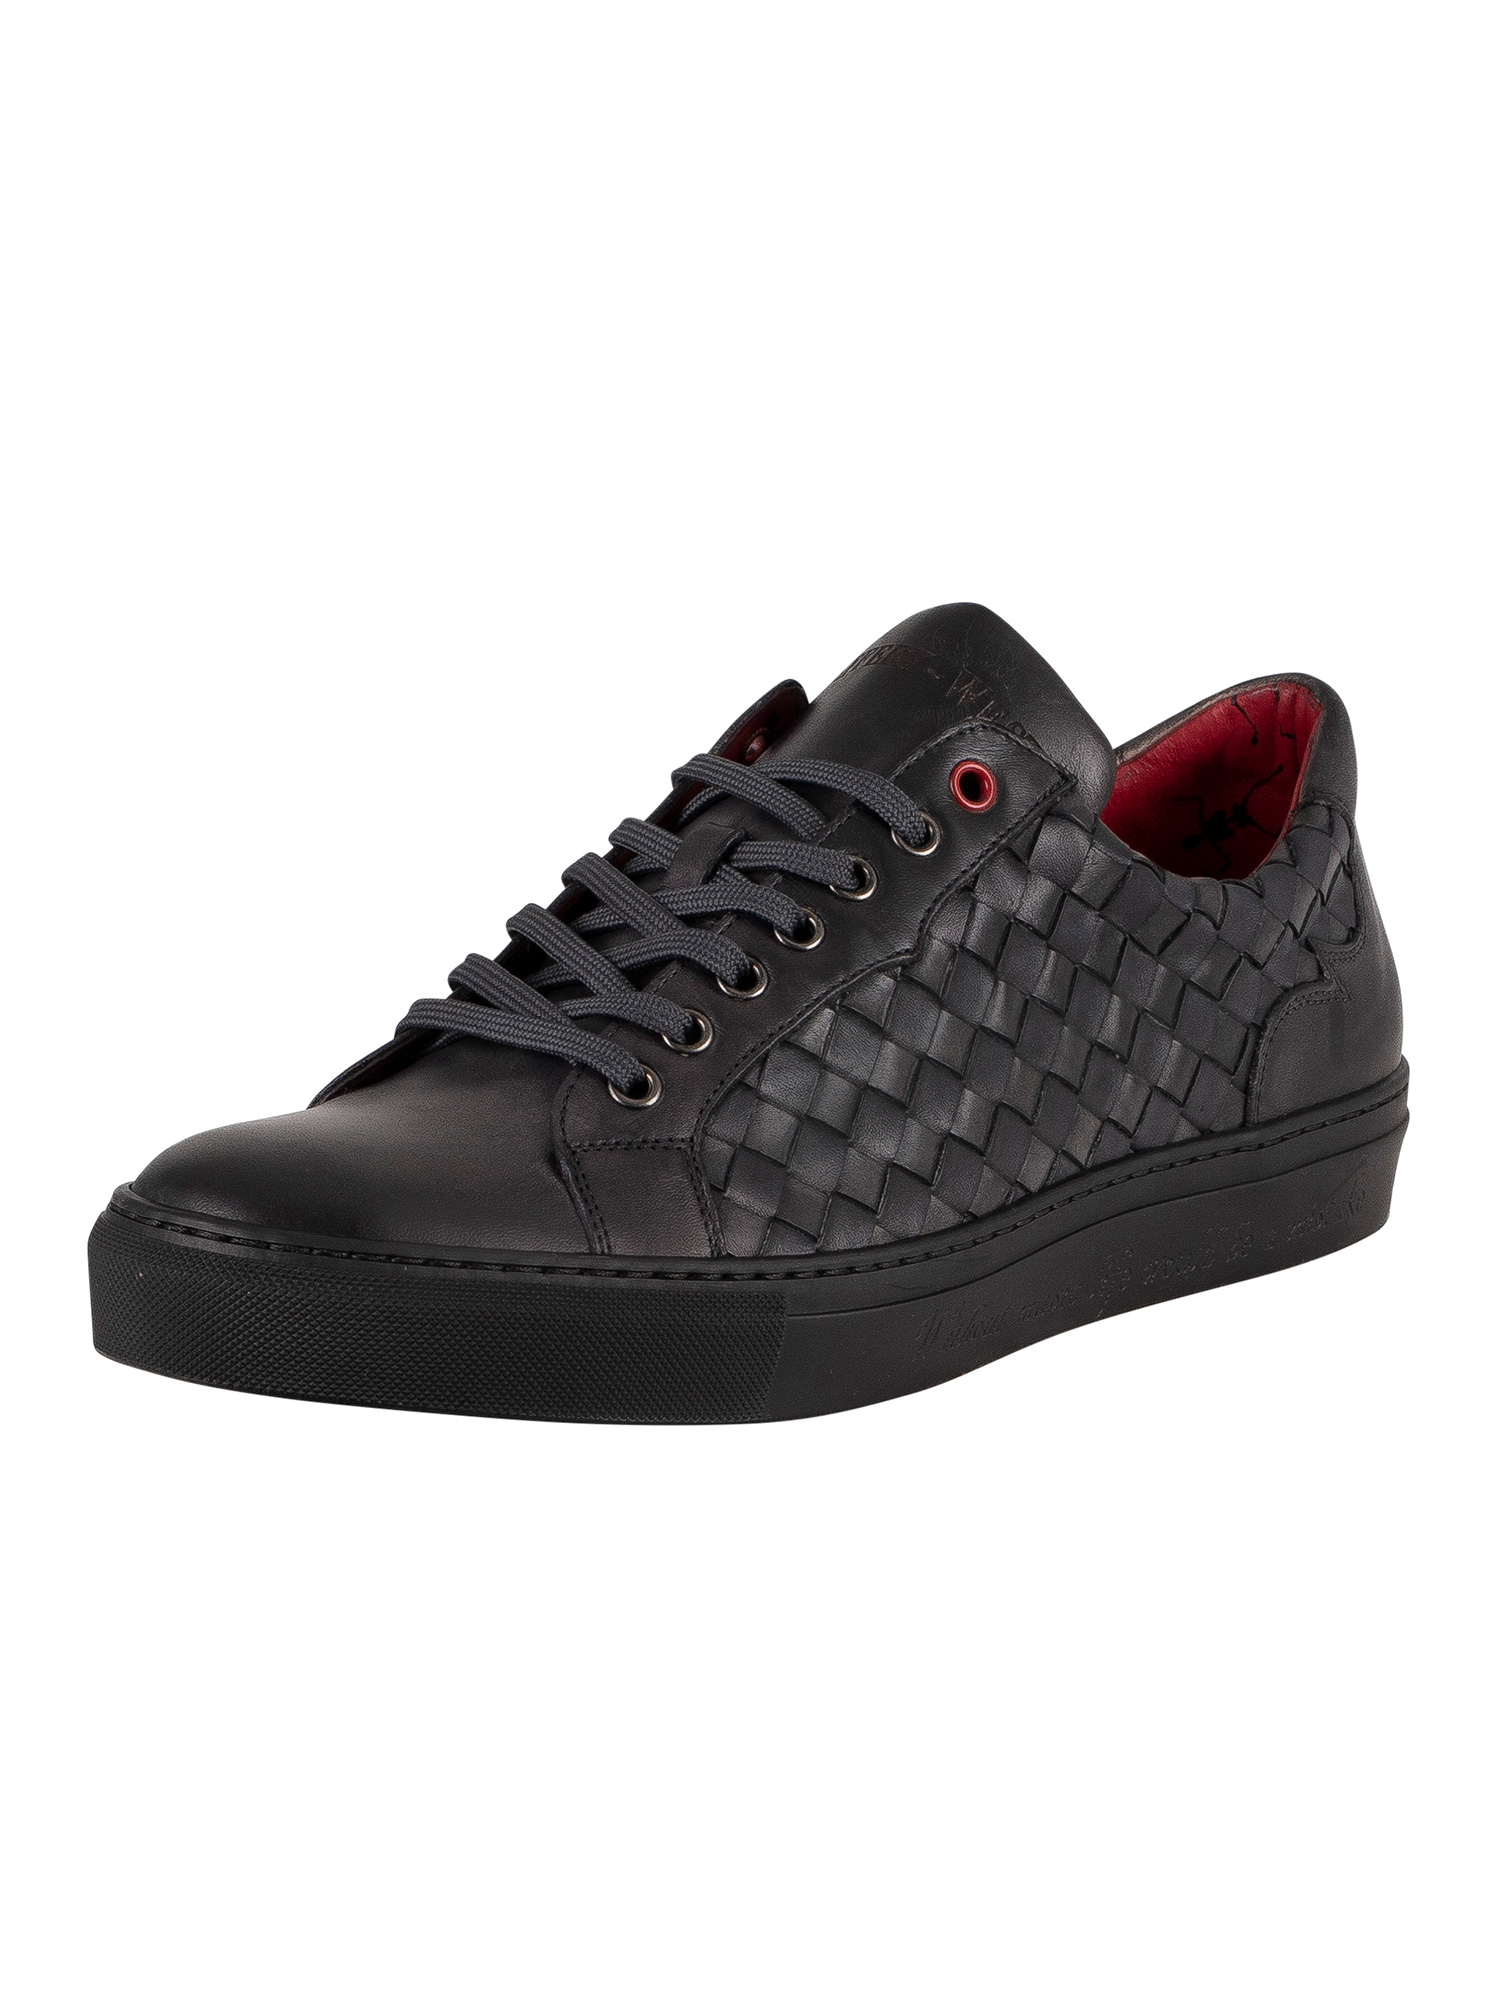 Jeffery west men sneakers leather fabric, Black | eBay